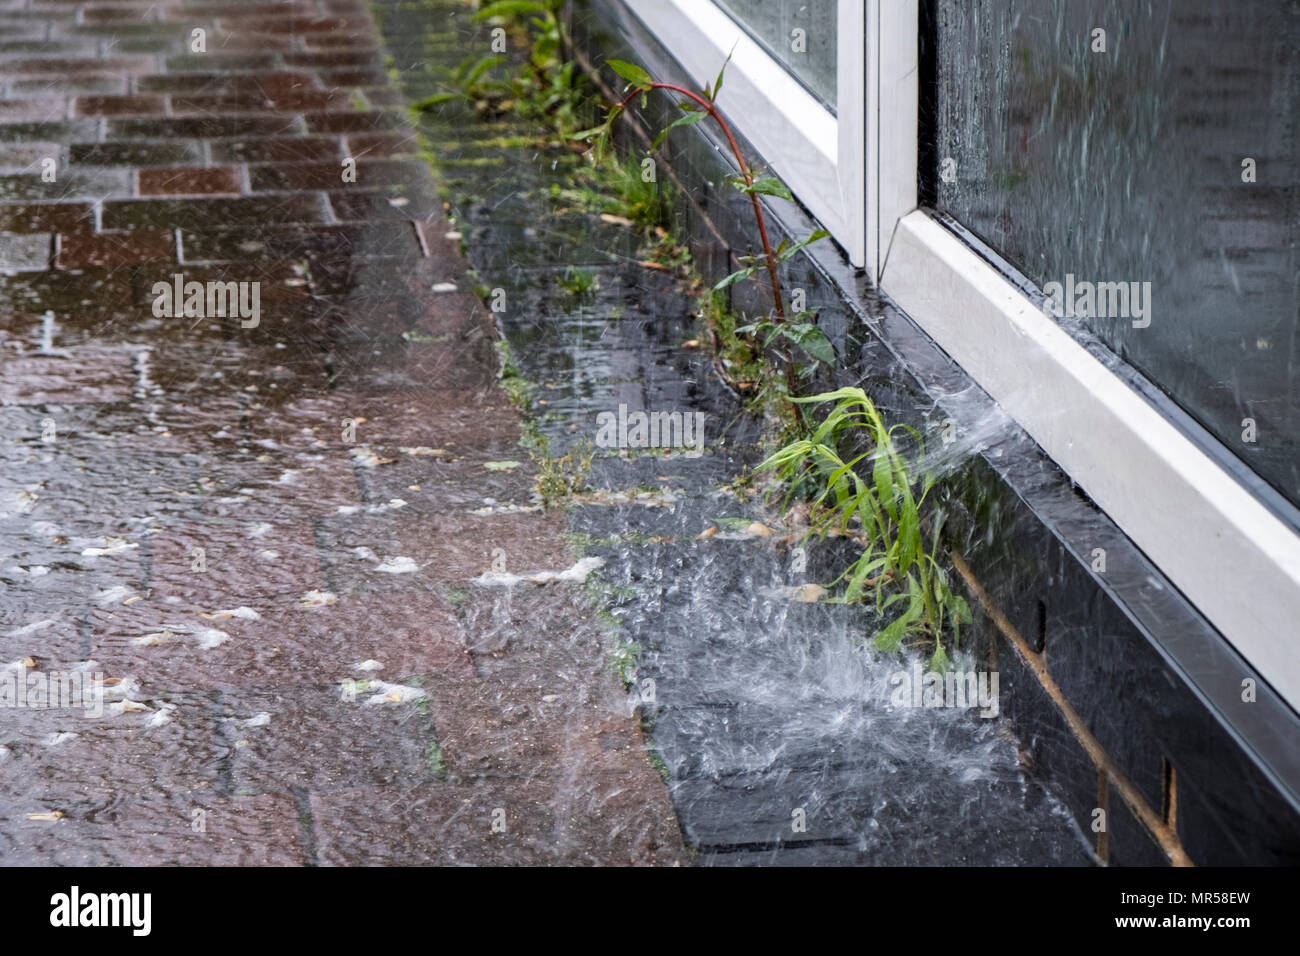 Par temps humide. L'eau de pluie qui s'écoule dans une fenêtre en verre et des éclaboussures sur la chaussée, Lancashire, England, UK Banque D'Images